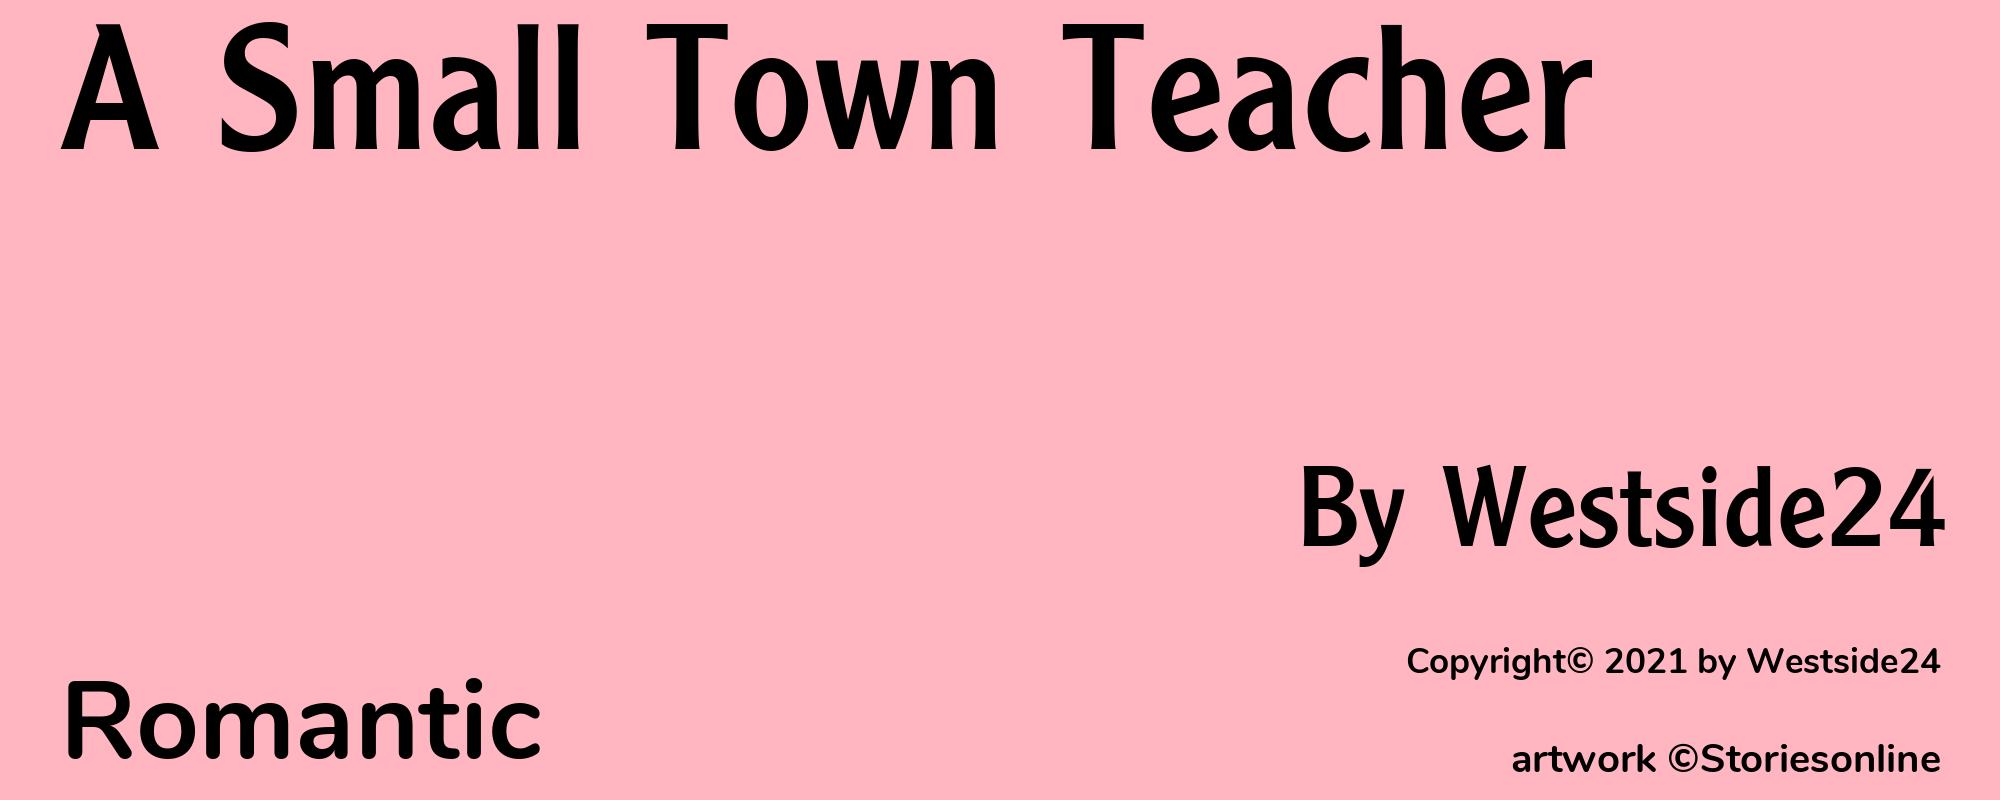 A Small Town Teacher - Cover